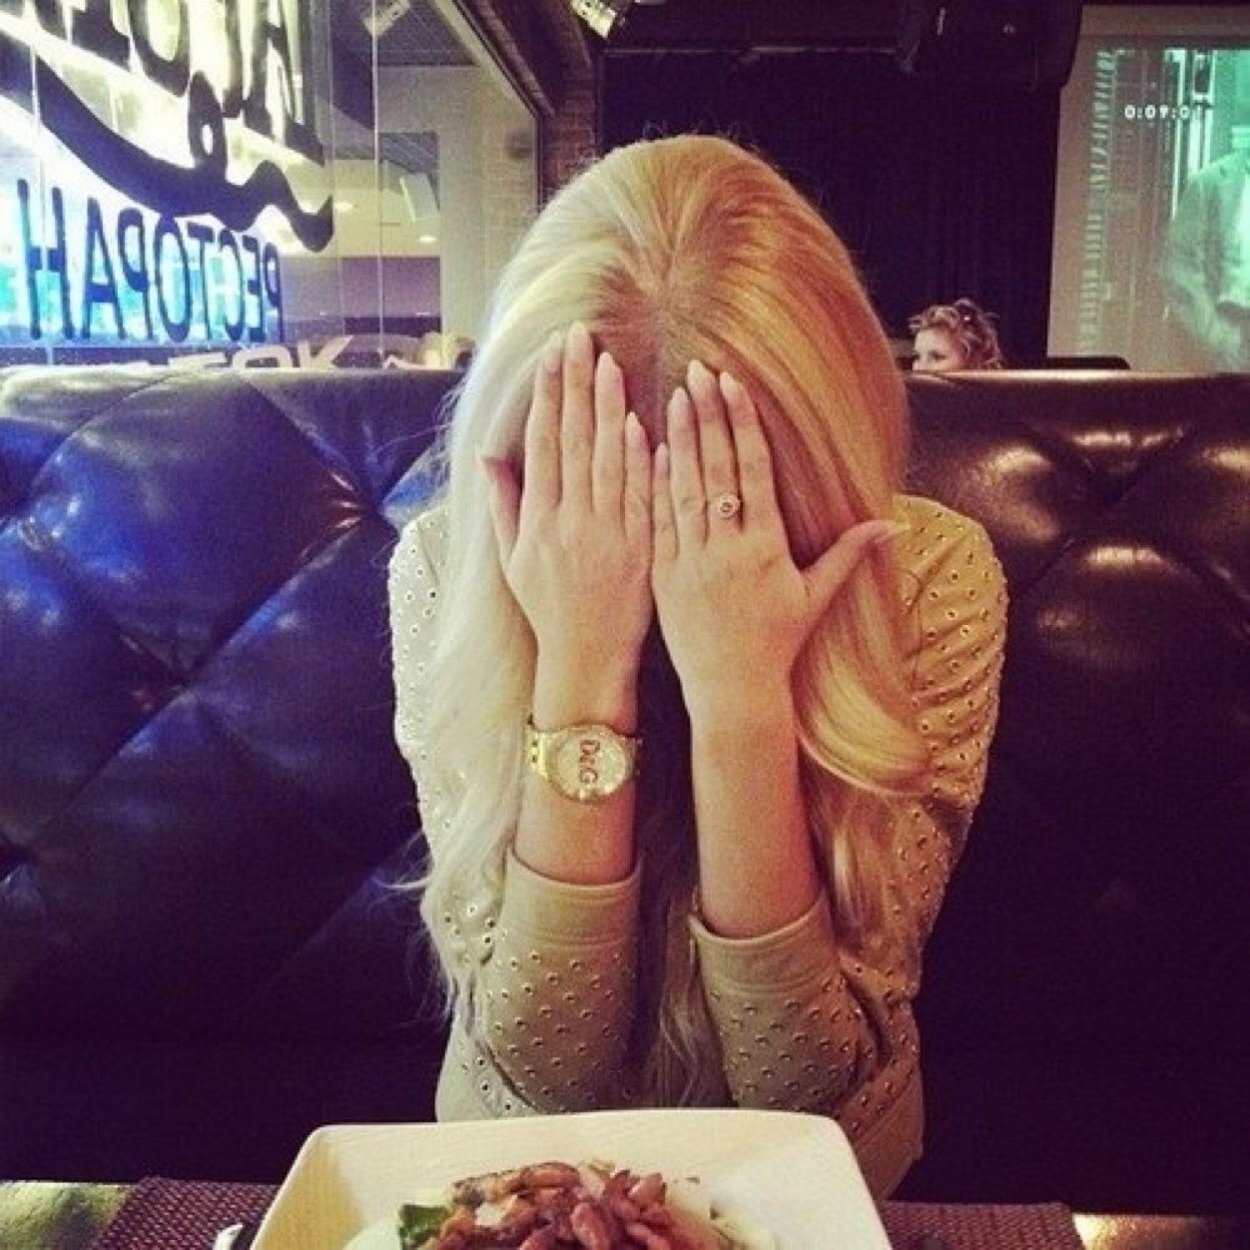 фото девушек блондинок в кафе